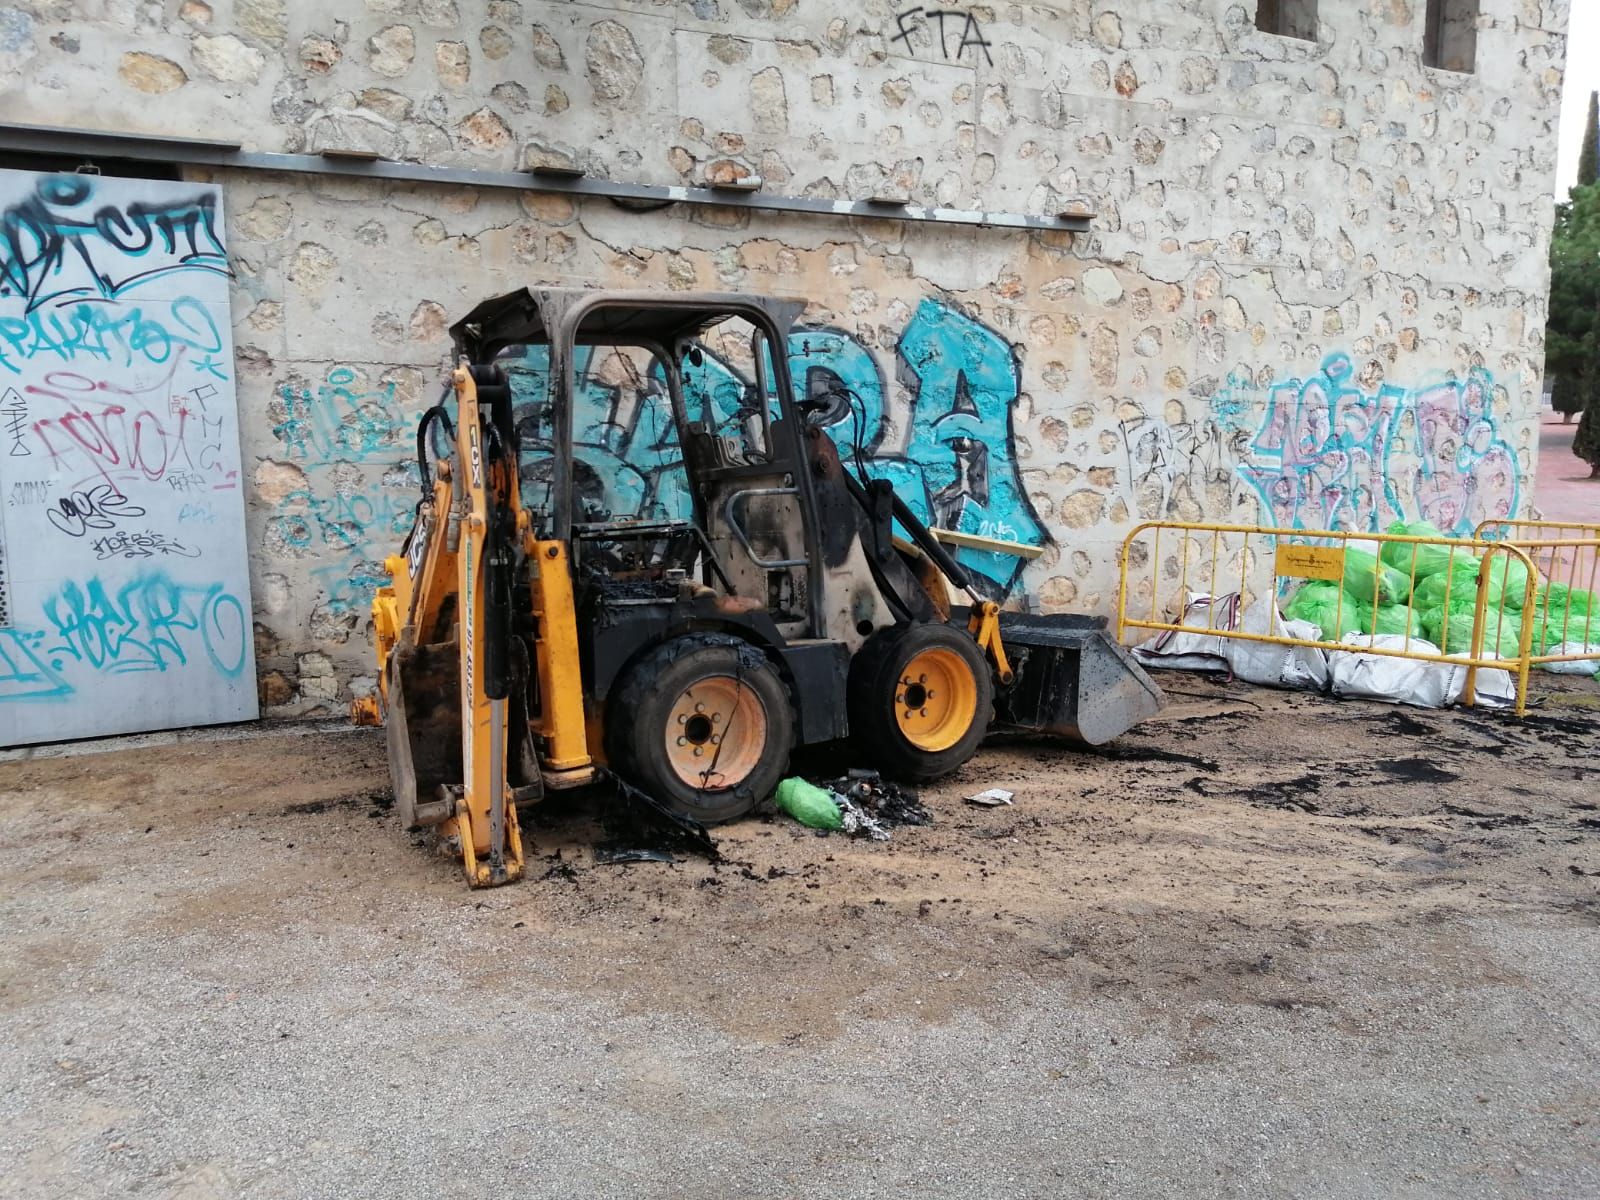 Incendian una excavadora y a unos contenedores de basura en Palma